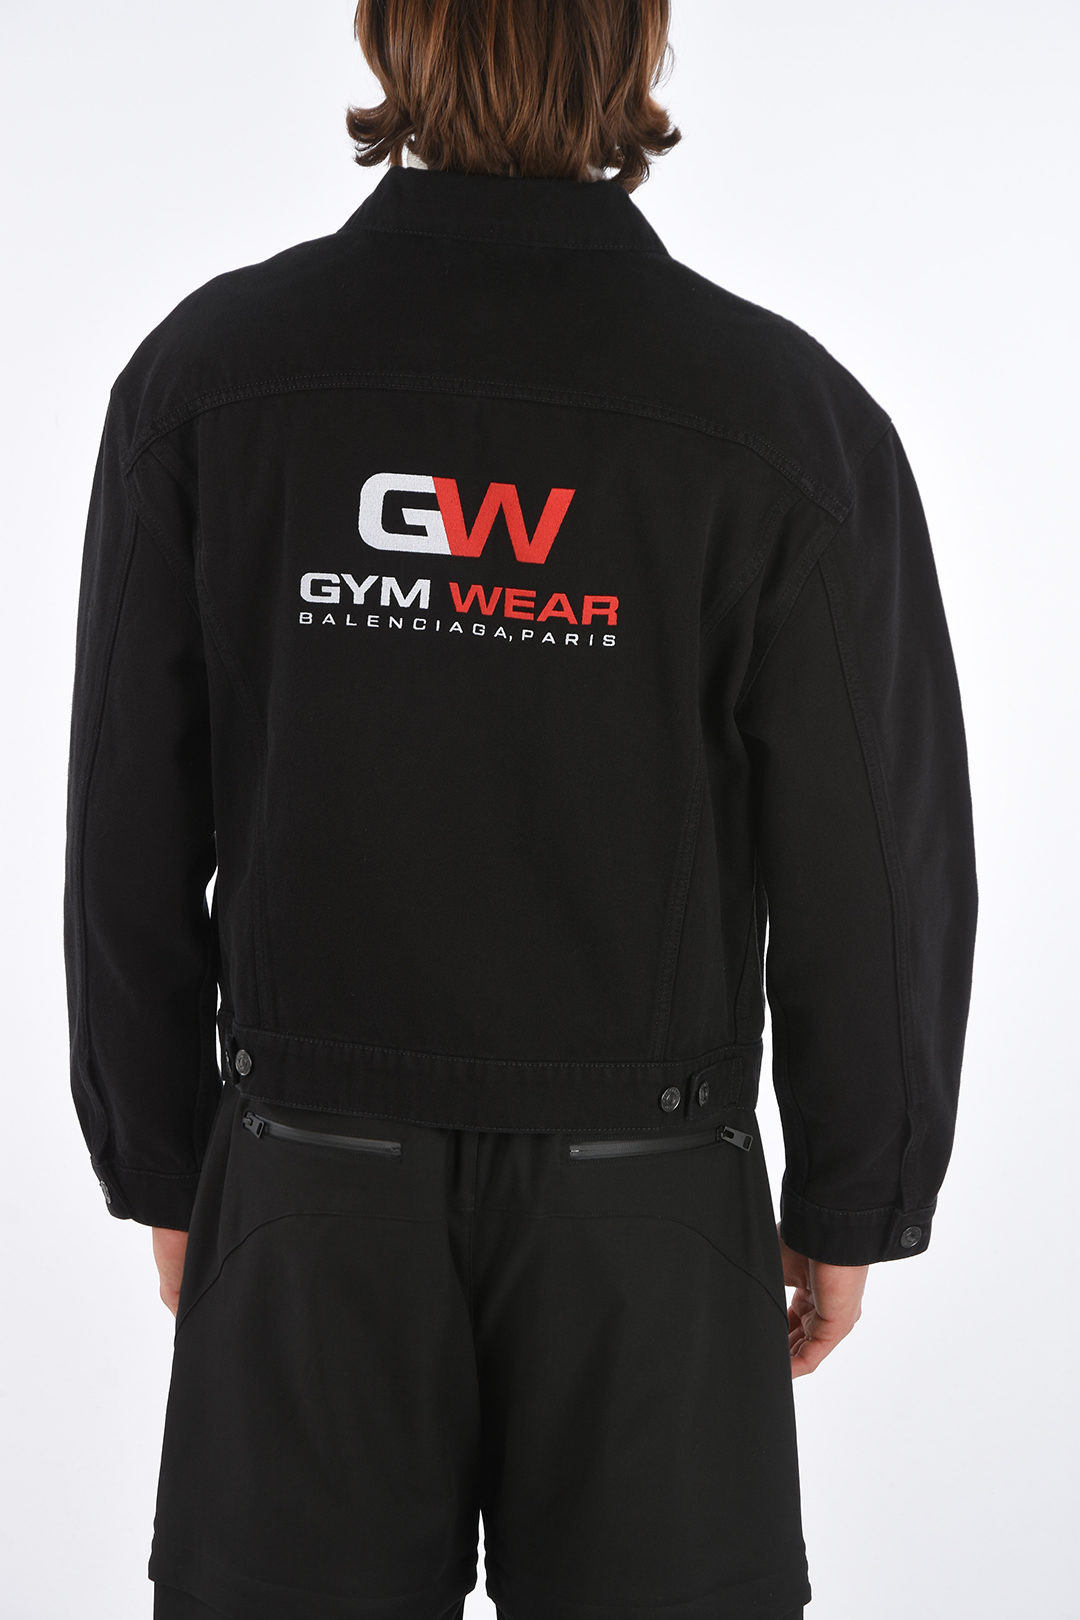 Balenciaga Outlet Gym Wear Tshirt with logo  Black  Balenciaga tshirt  612964 TIVD5 online on GIGLIOCOM